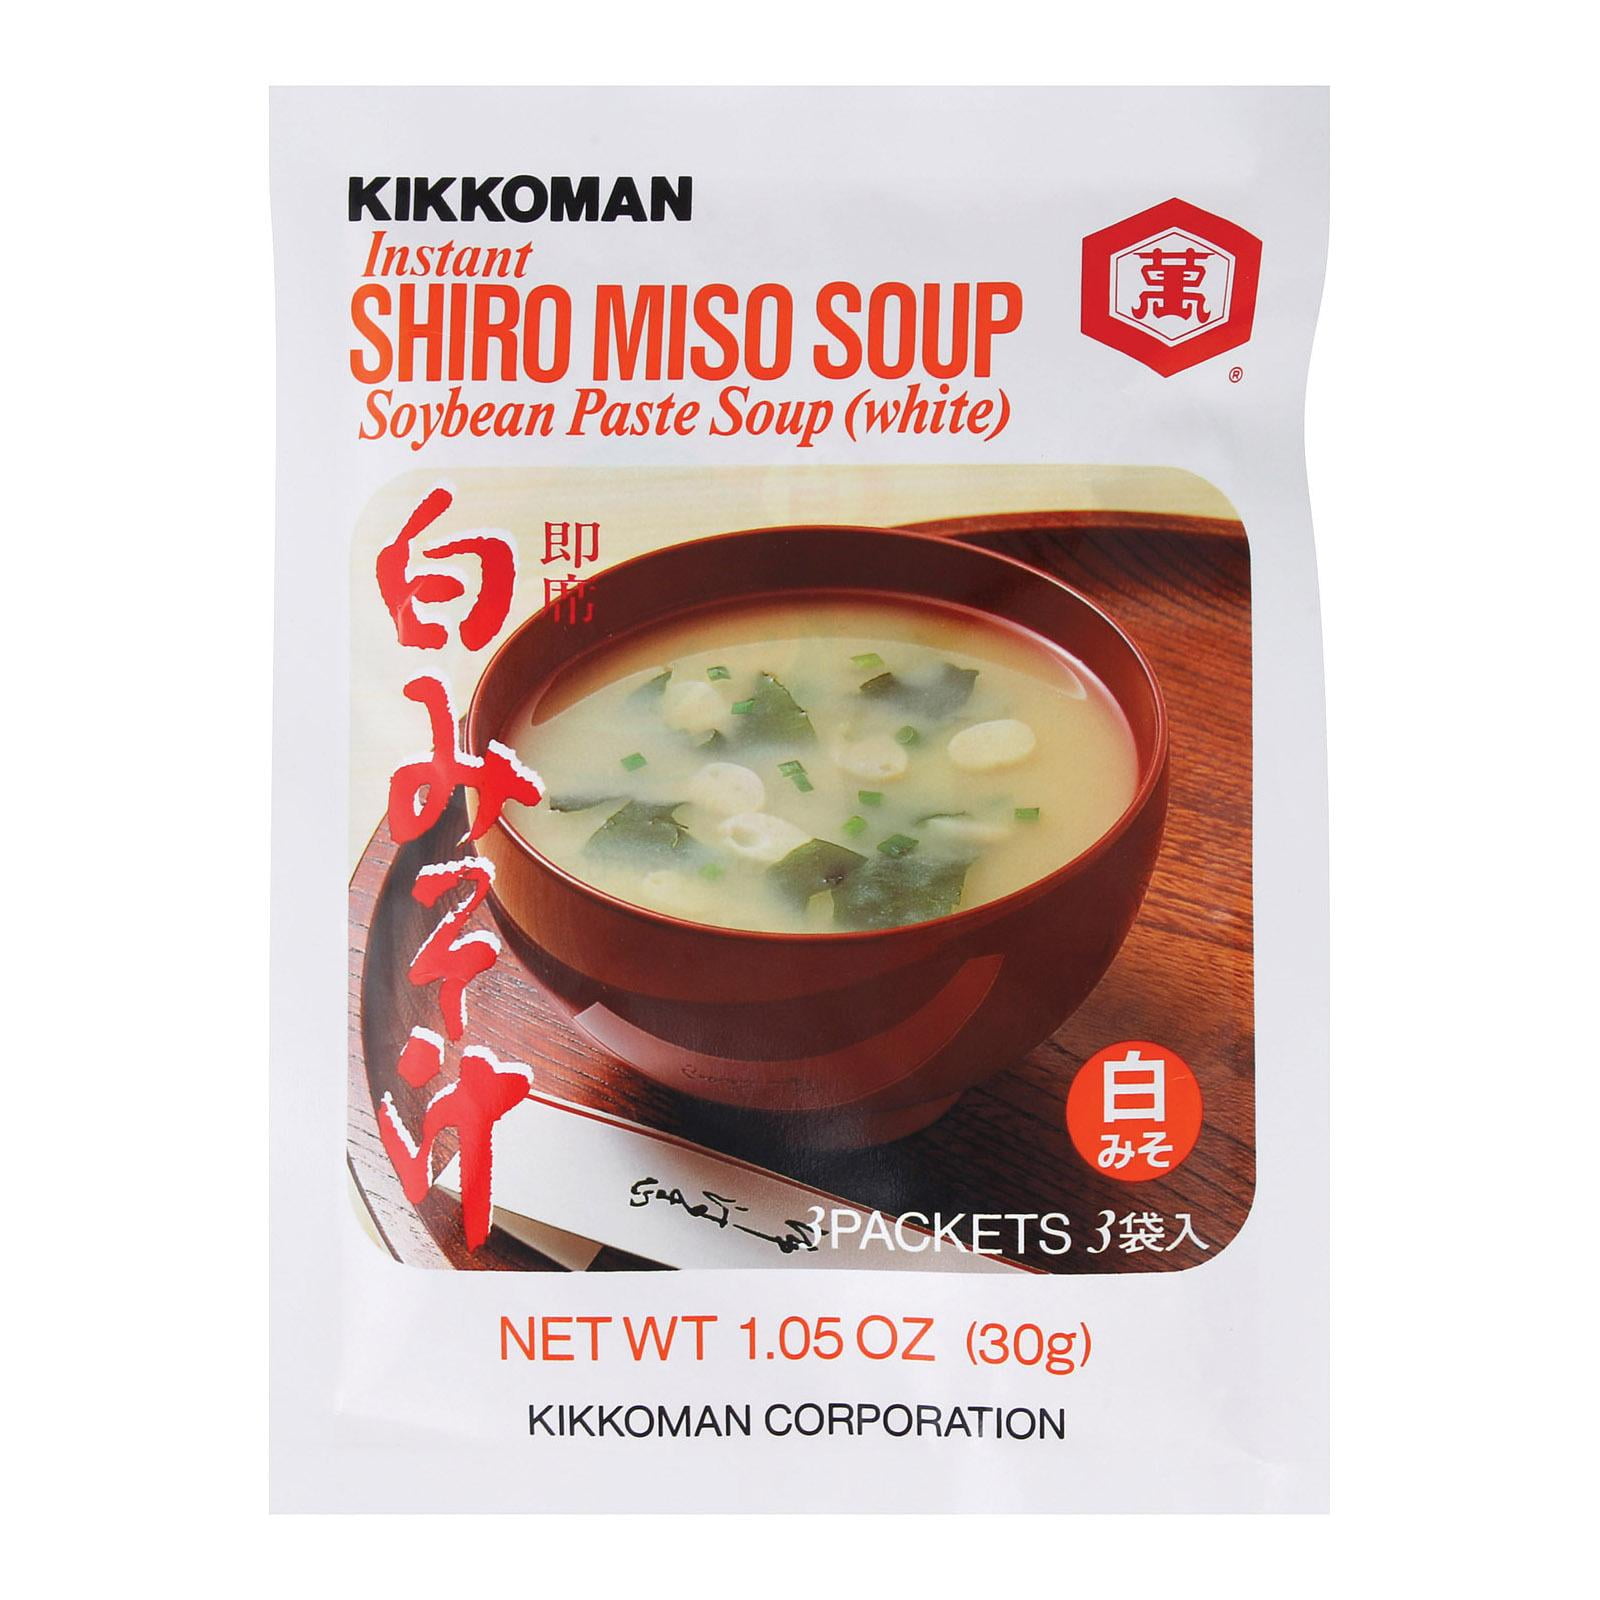 Soupe instantanée Kikkoman, au miso blanc - 30g